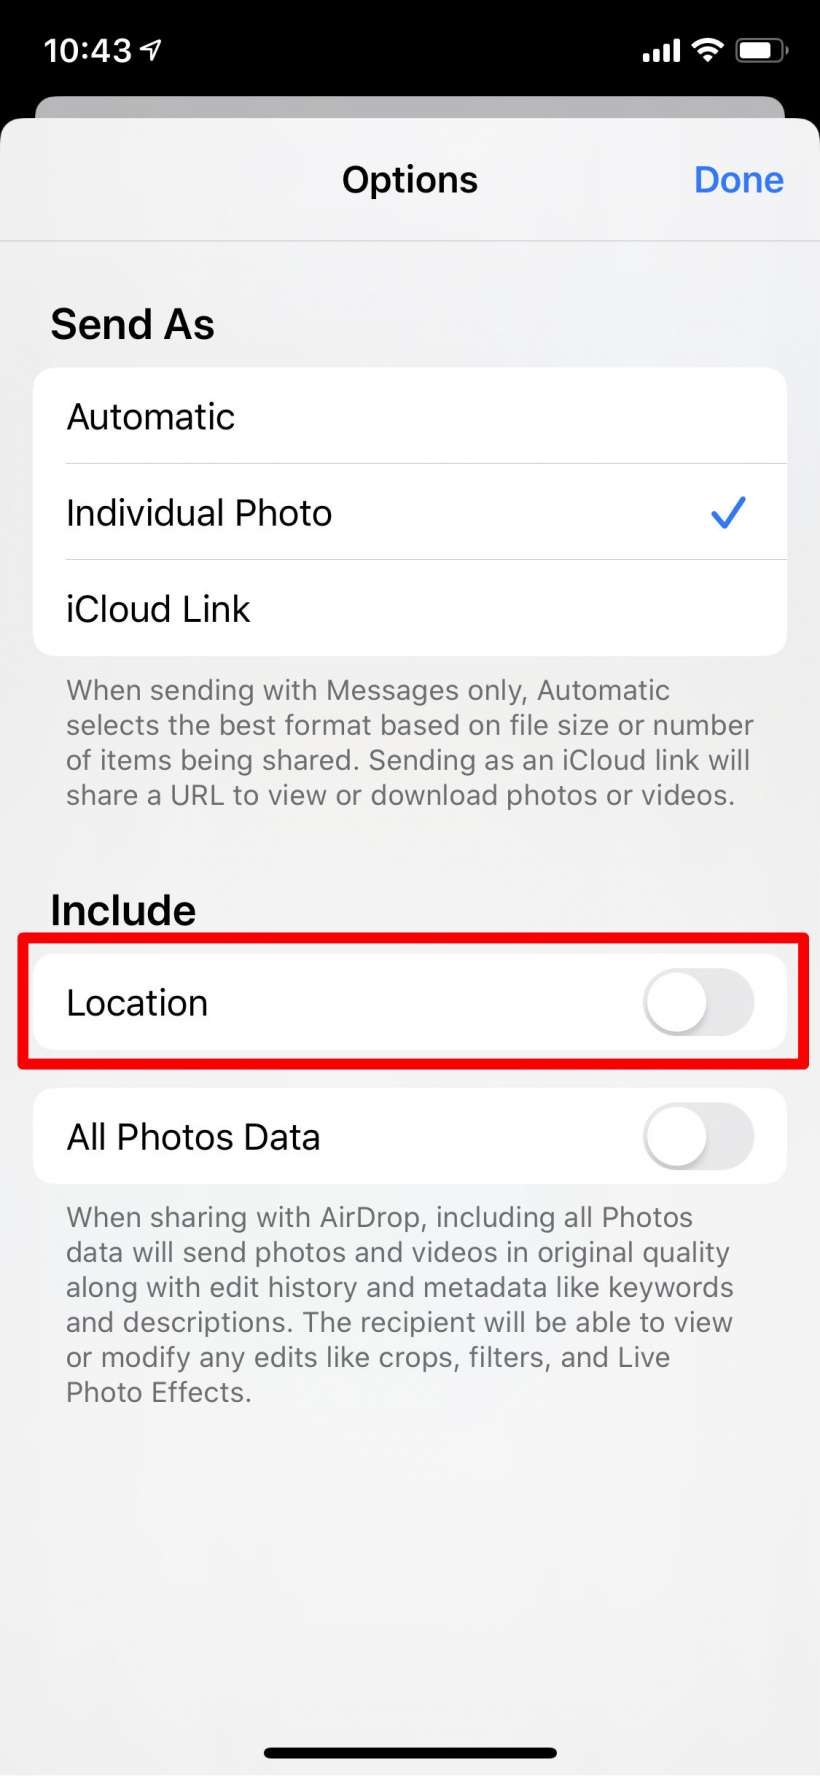 كيفية مشاركة الصور دون بيانات الموقع على iPhone و iPad.